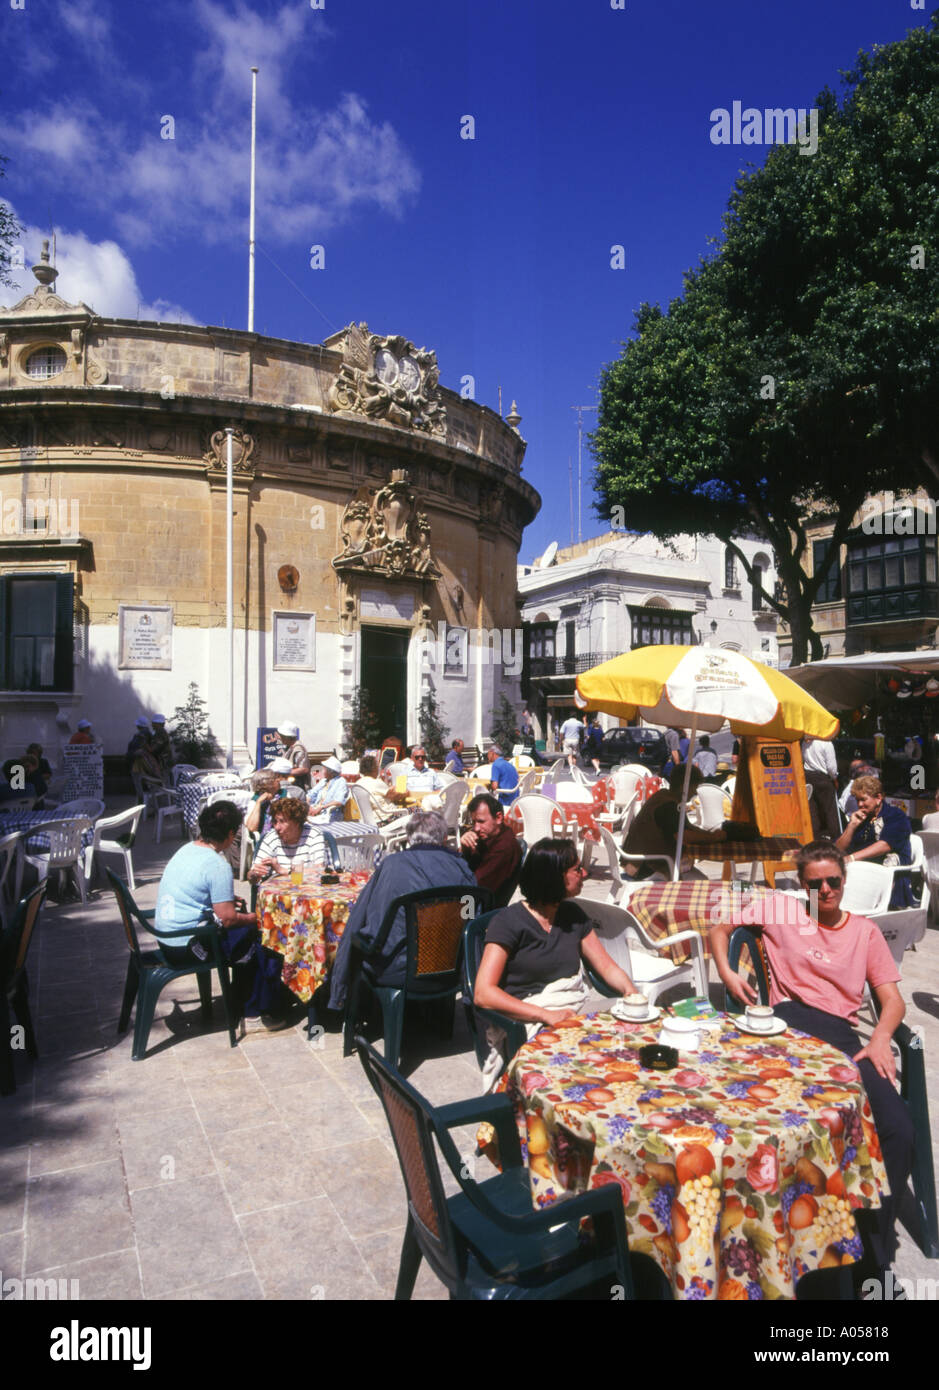 dh IT Tokk mercato VICTORIA GOZO turisti in caffetteria all'aperto europa all'aperto strade da tavola malta mediterraneo Foto Stock